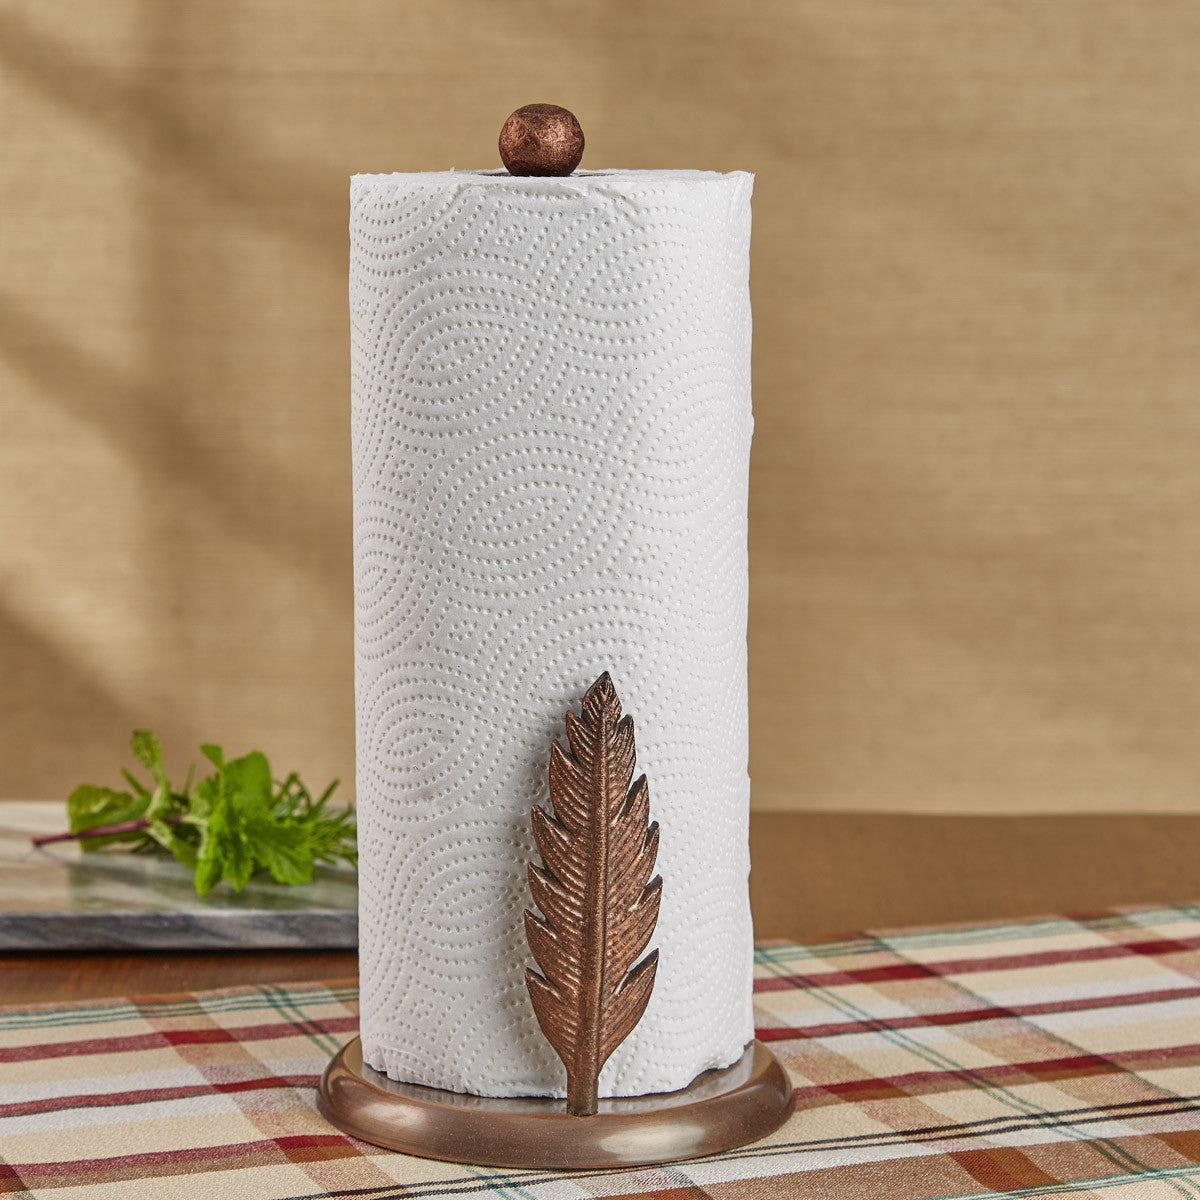 Under Cabinet Decorative Paper Towel Holder Black Wrought Iron Handmade by  RTZEN 600173433355 | eBay